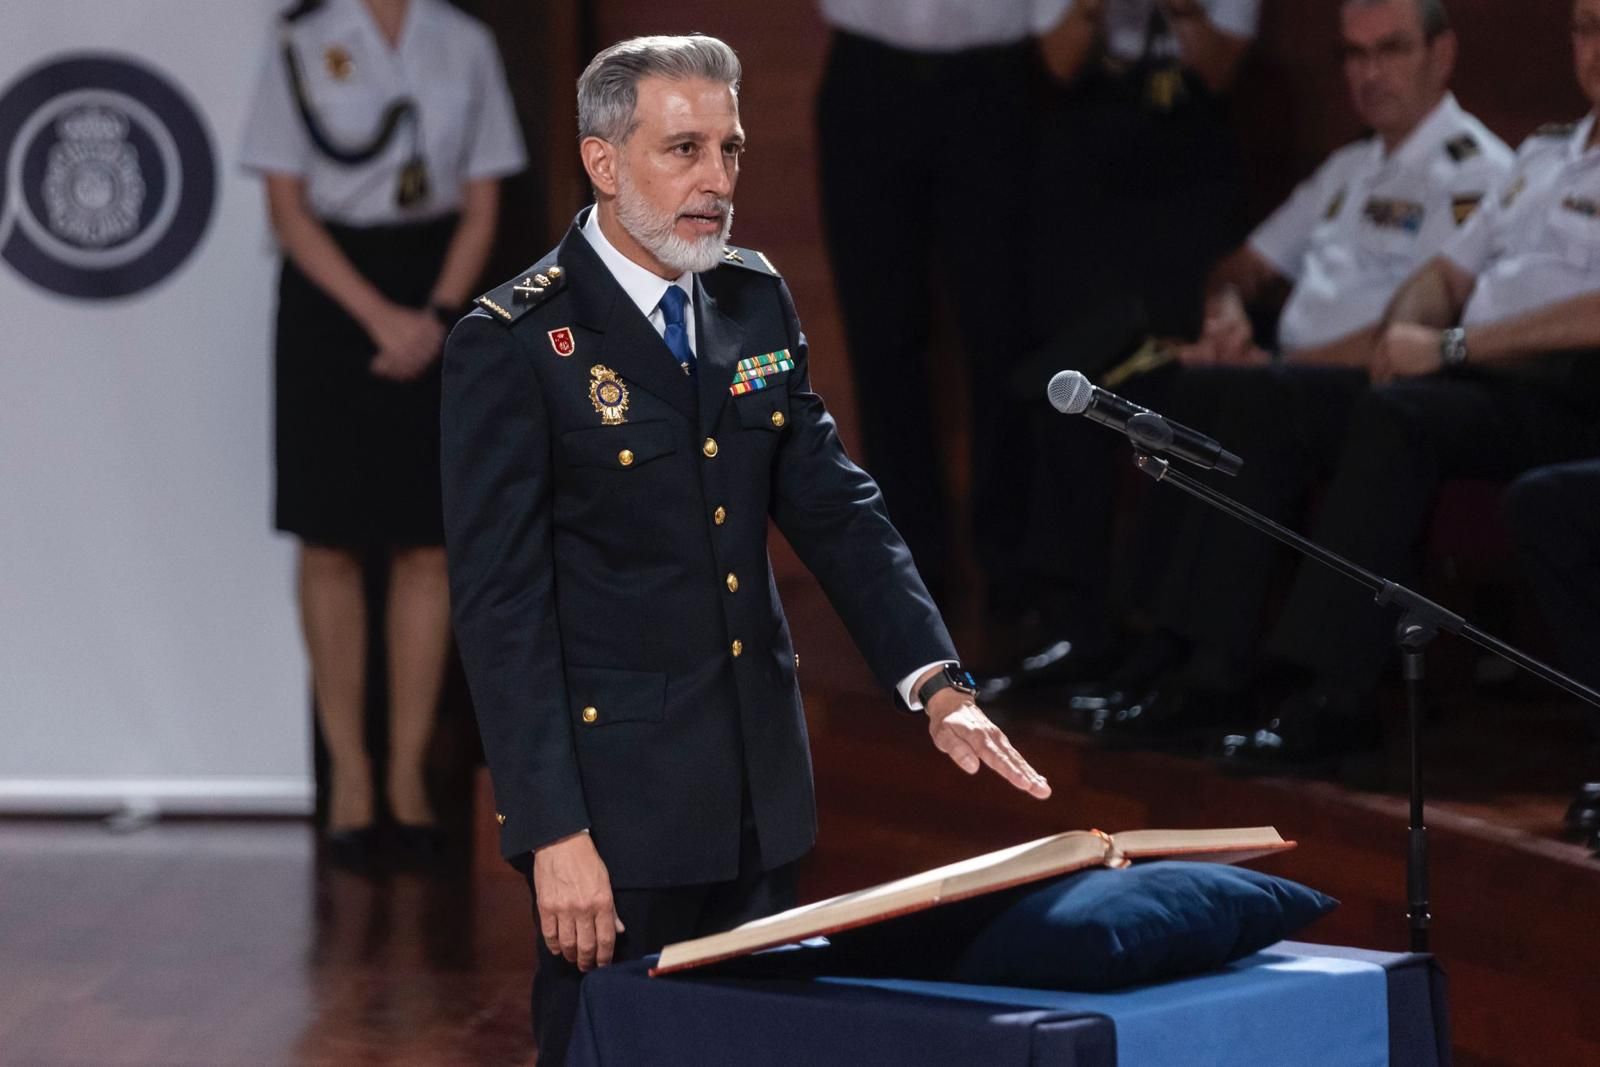 Toma de posesión del nuevo jefe superior de Policía de la Comunitat Valenciana, Carlos Gajero Grande